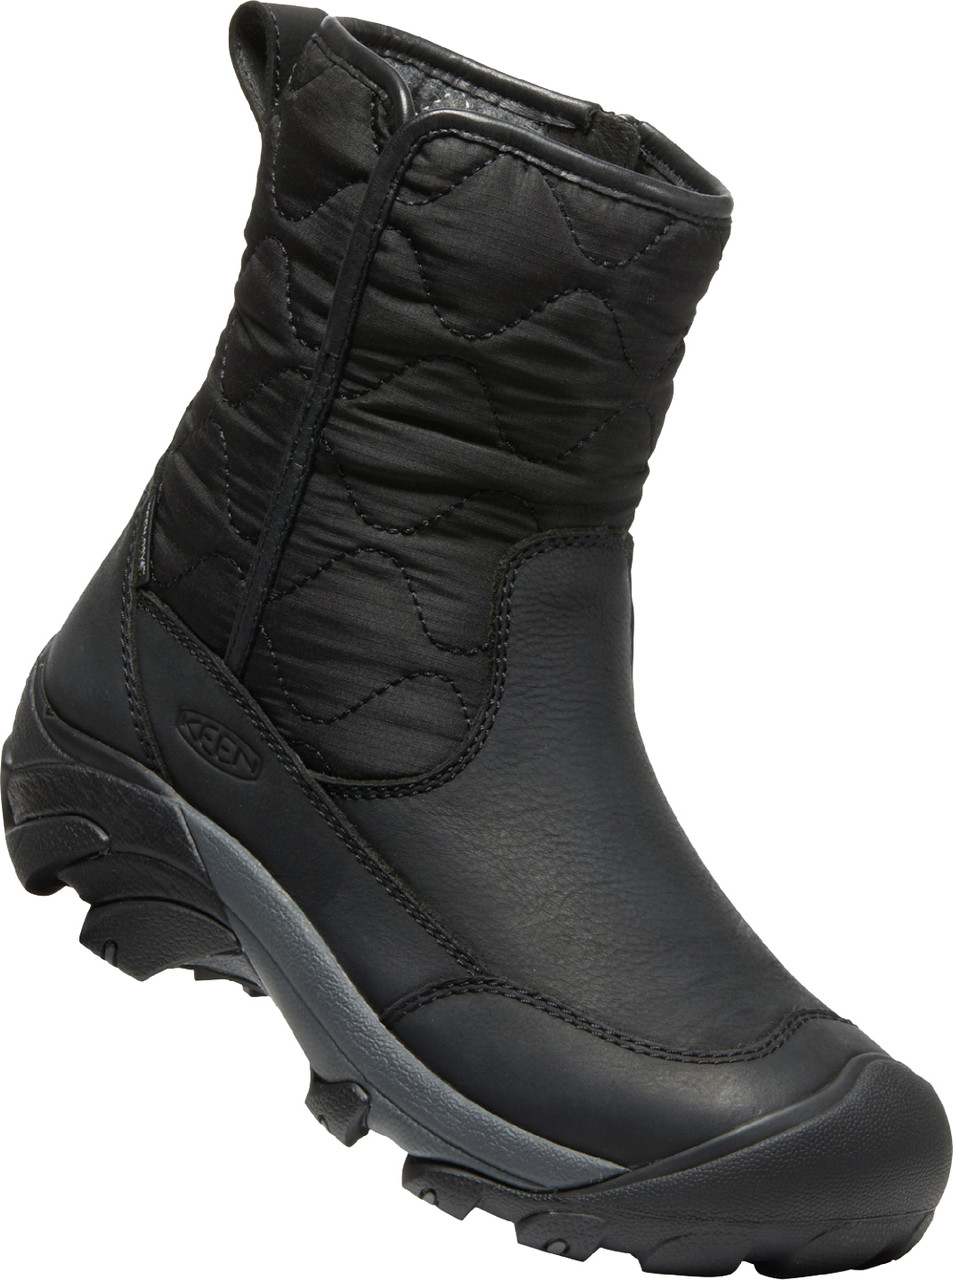 Keen Betty Pull On Waterproof Winter Boots - Women's | MEC